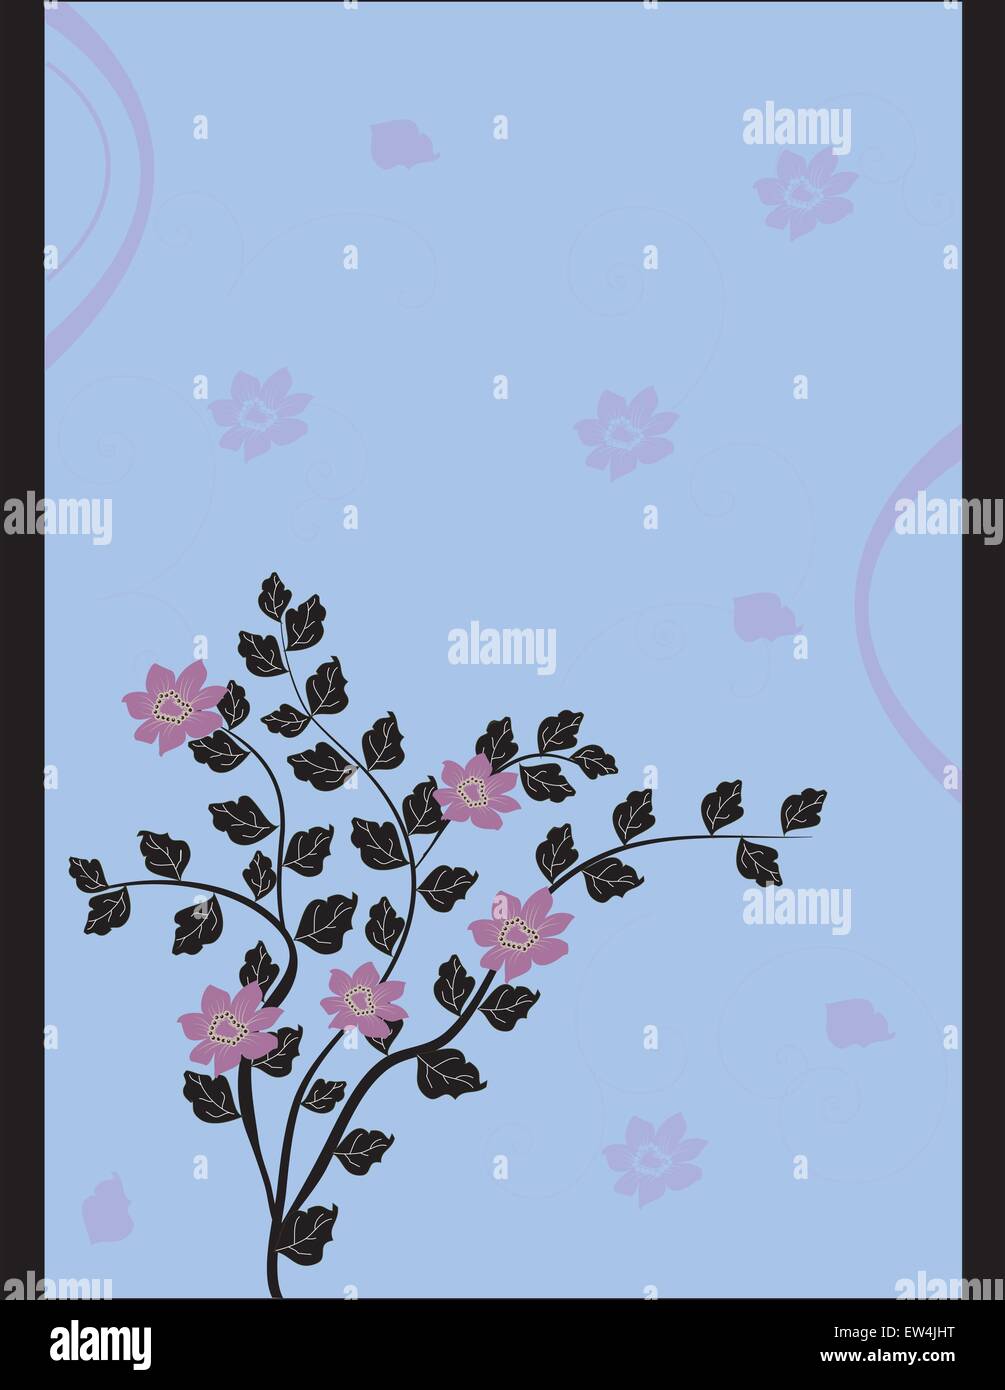 Grußkarte mit floralen Elementen Stock Vektor